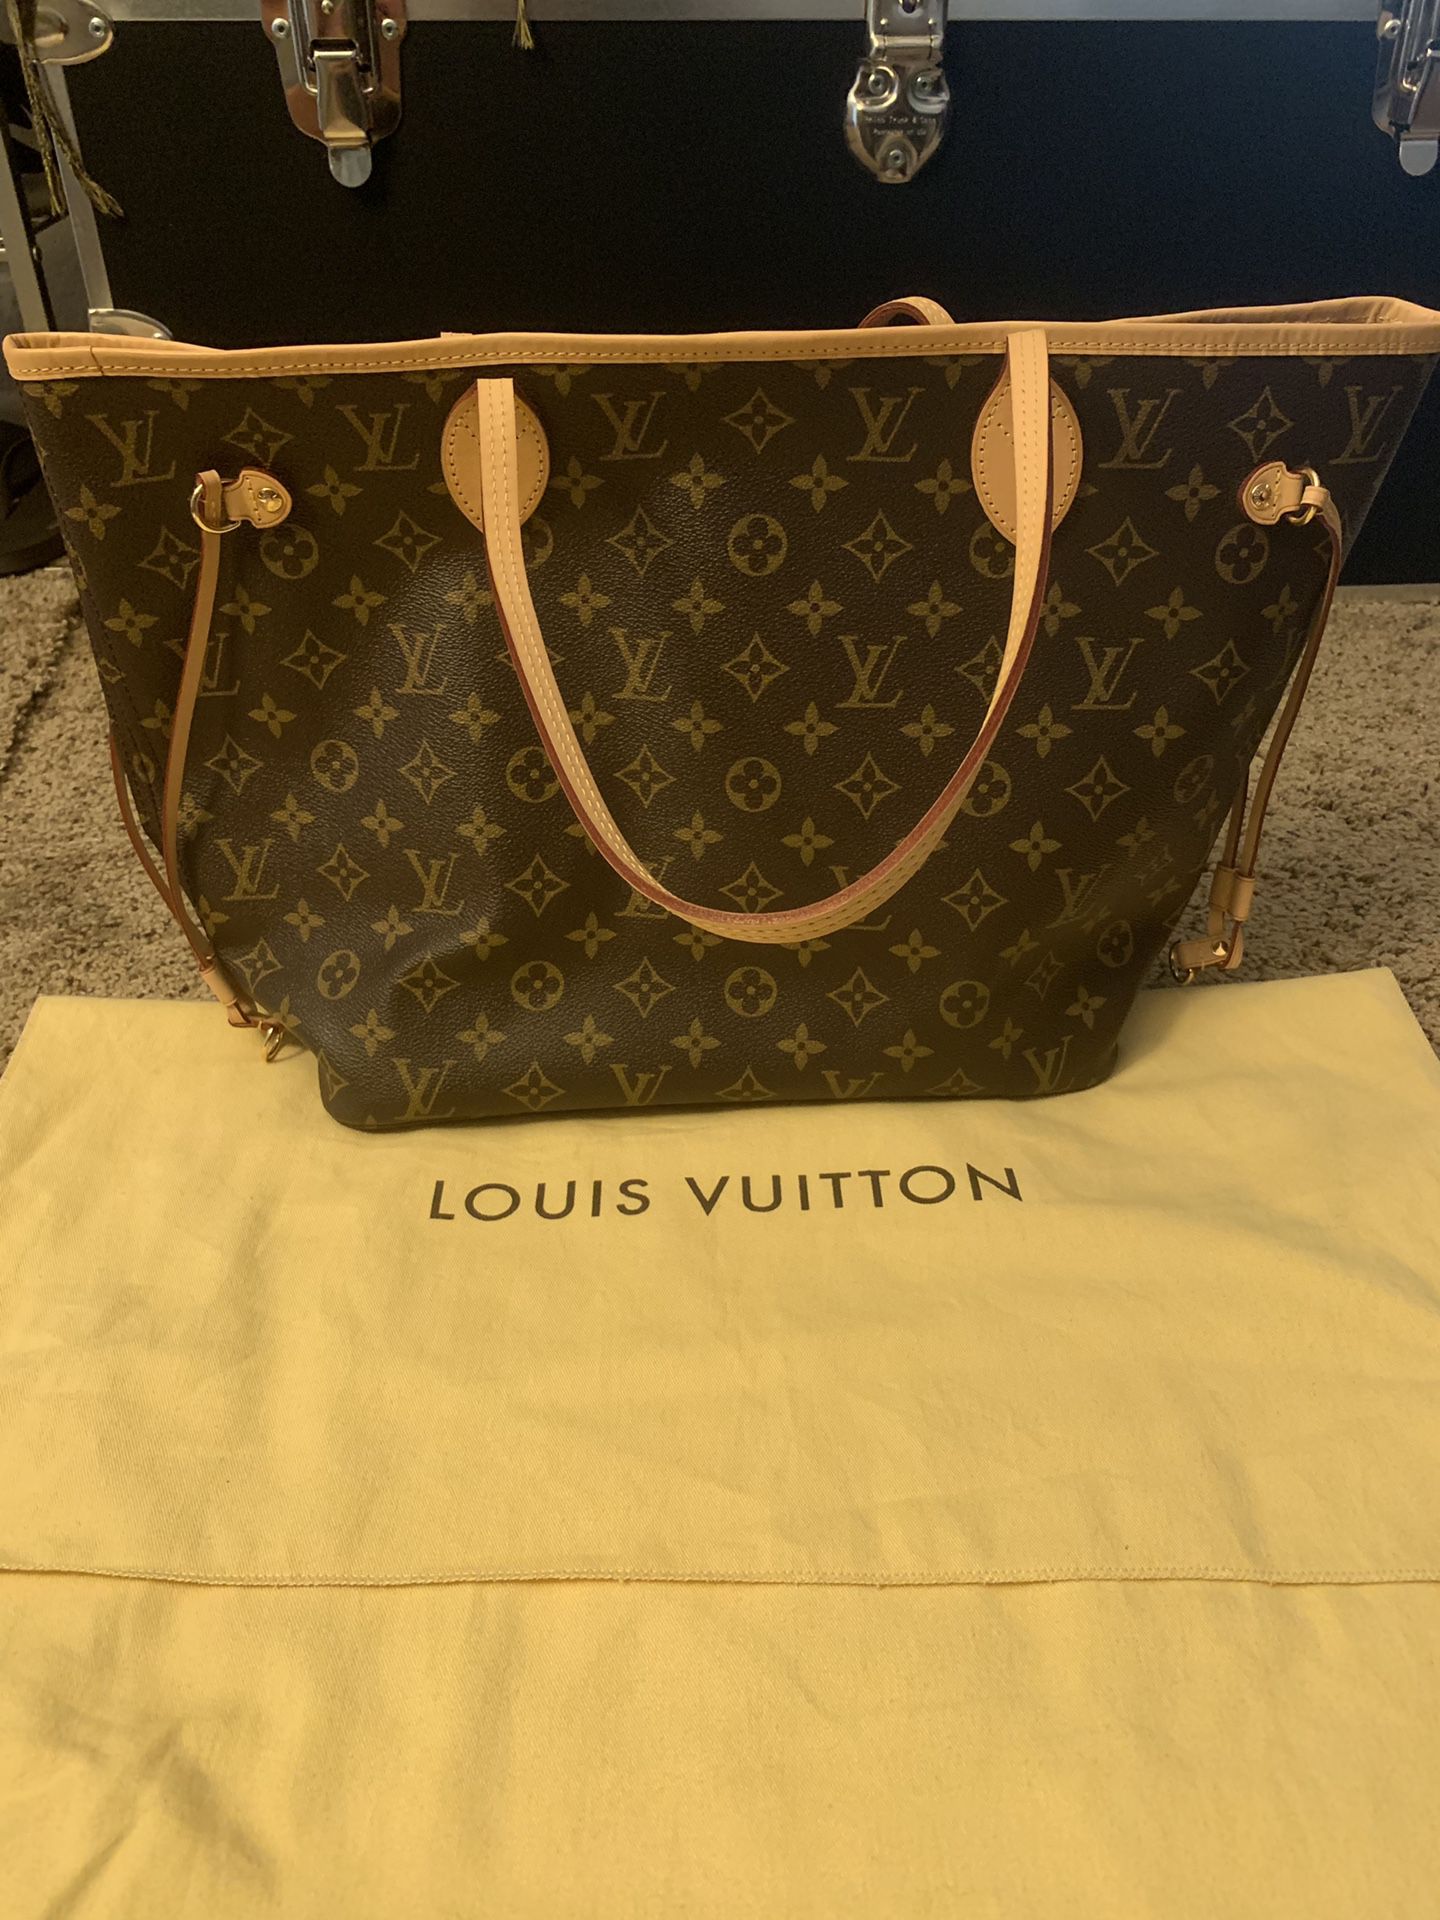 Brand new Louis Vuitton Neverfull MM Bag